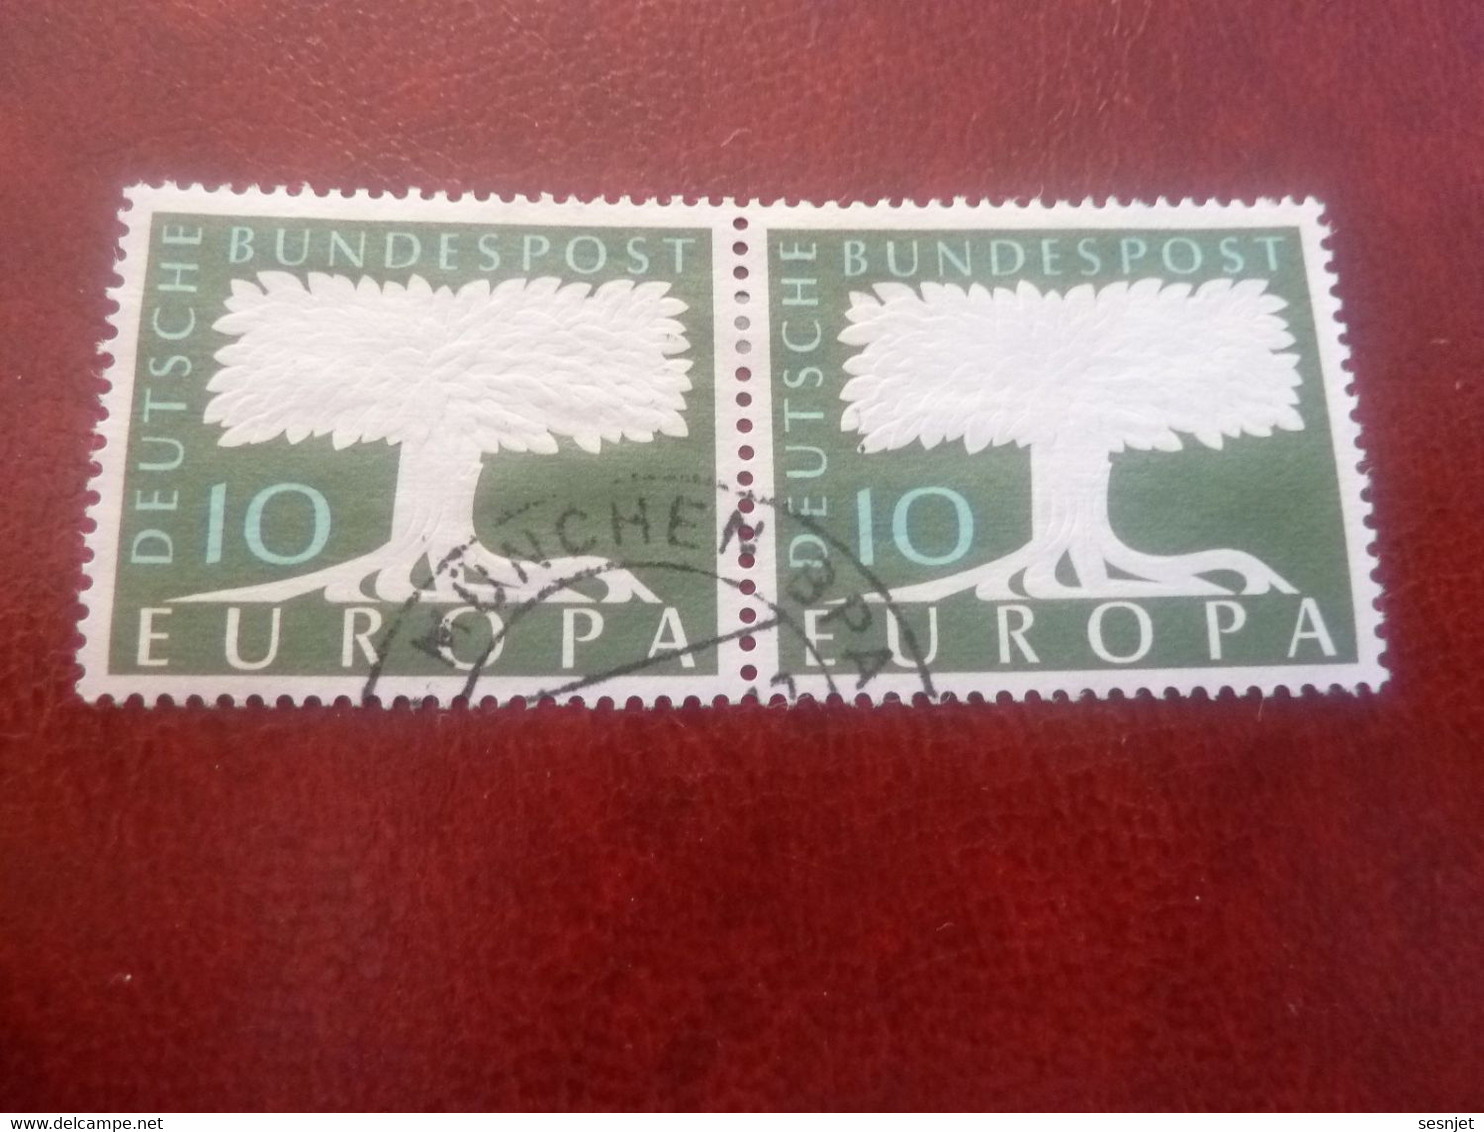 Deutsche Bundespost - Europa - Val 10 - Vert Et Blanc - Double Oblitérés - Année 1958 - - 1958